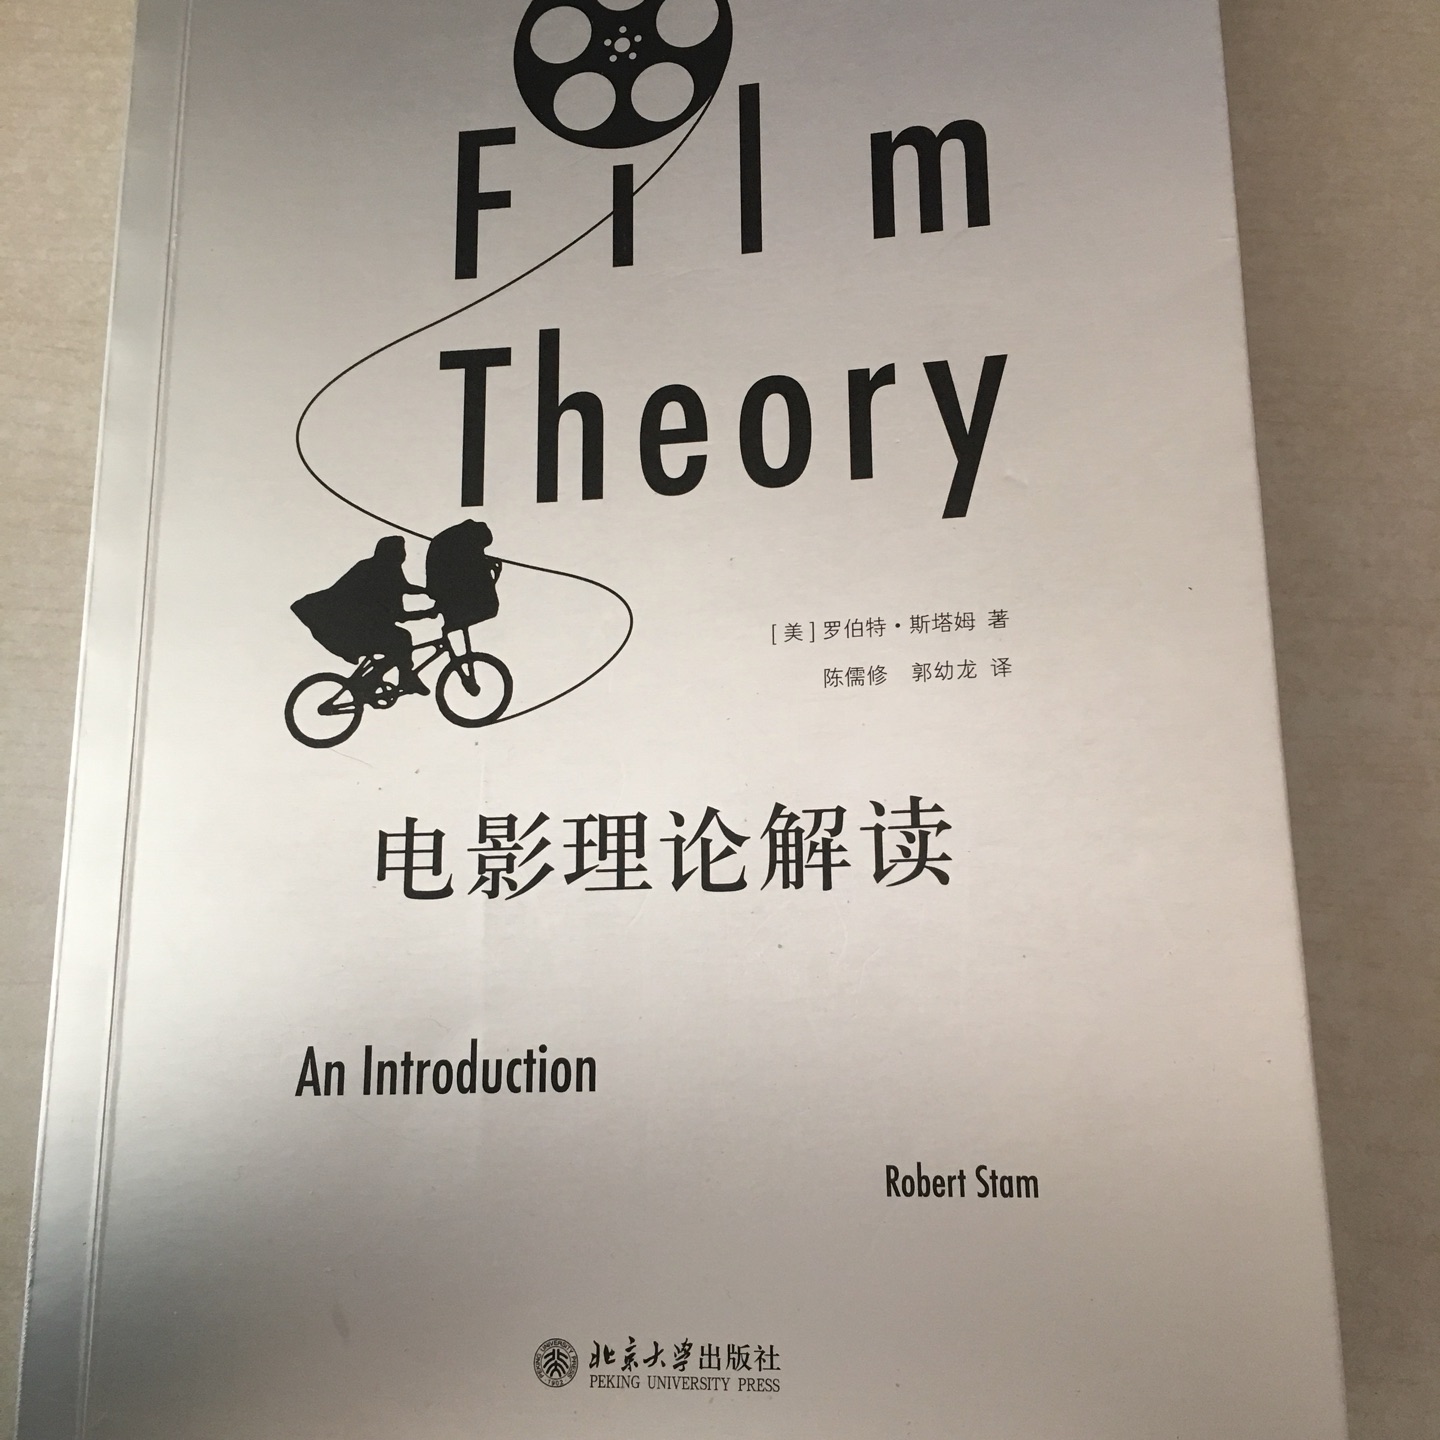 在理论解读及其内在关联上具备极高的学术价值，同时也清晰勾勒出电影理论史的完整脉络。